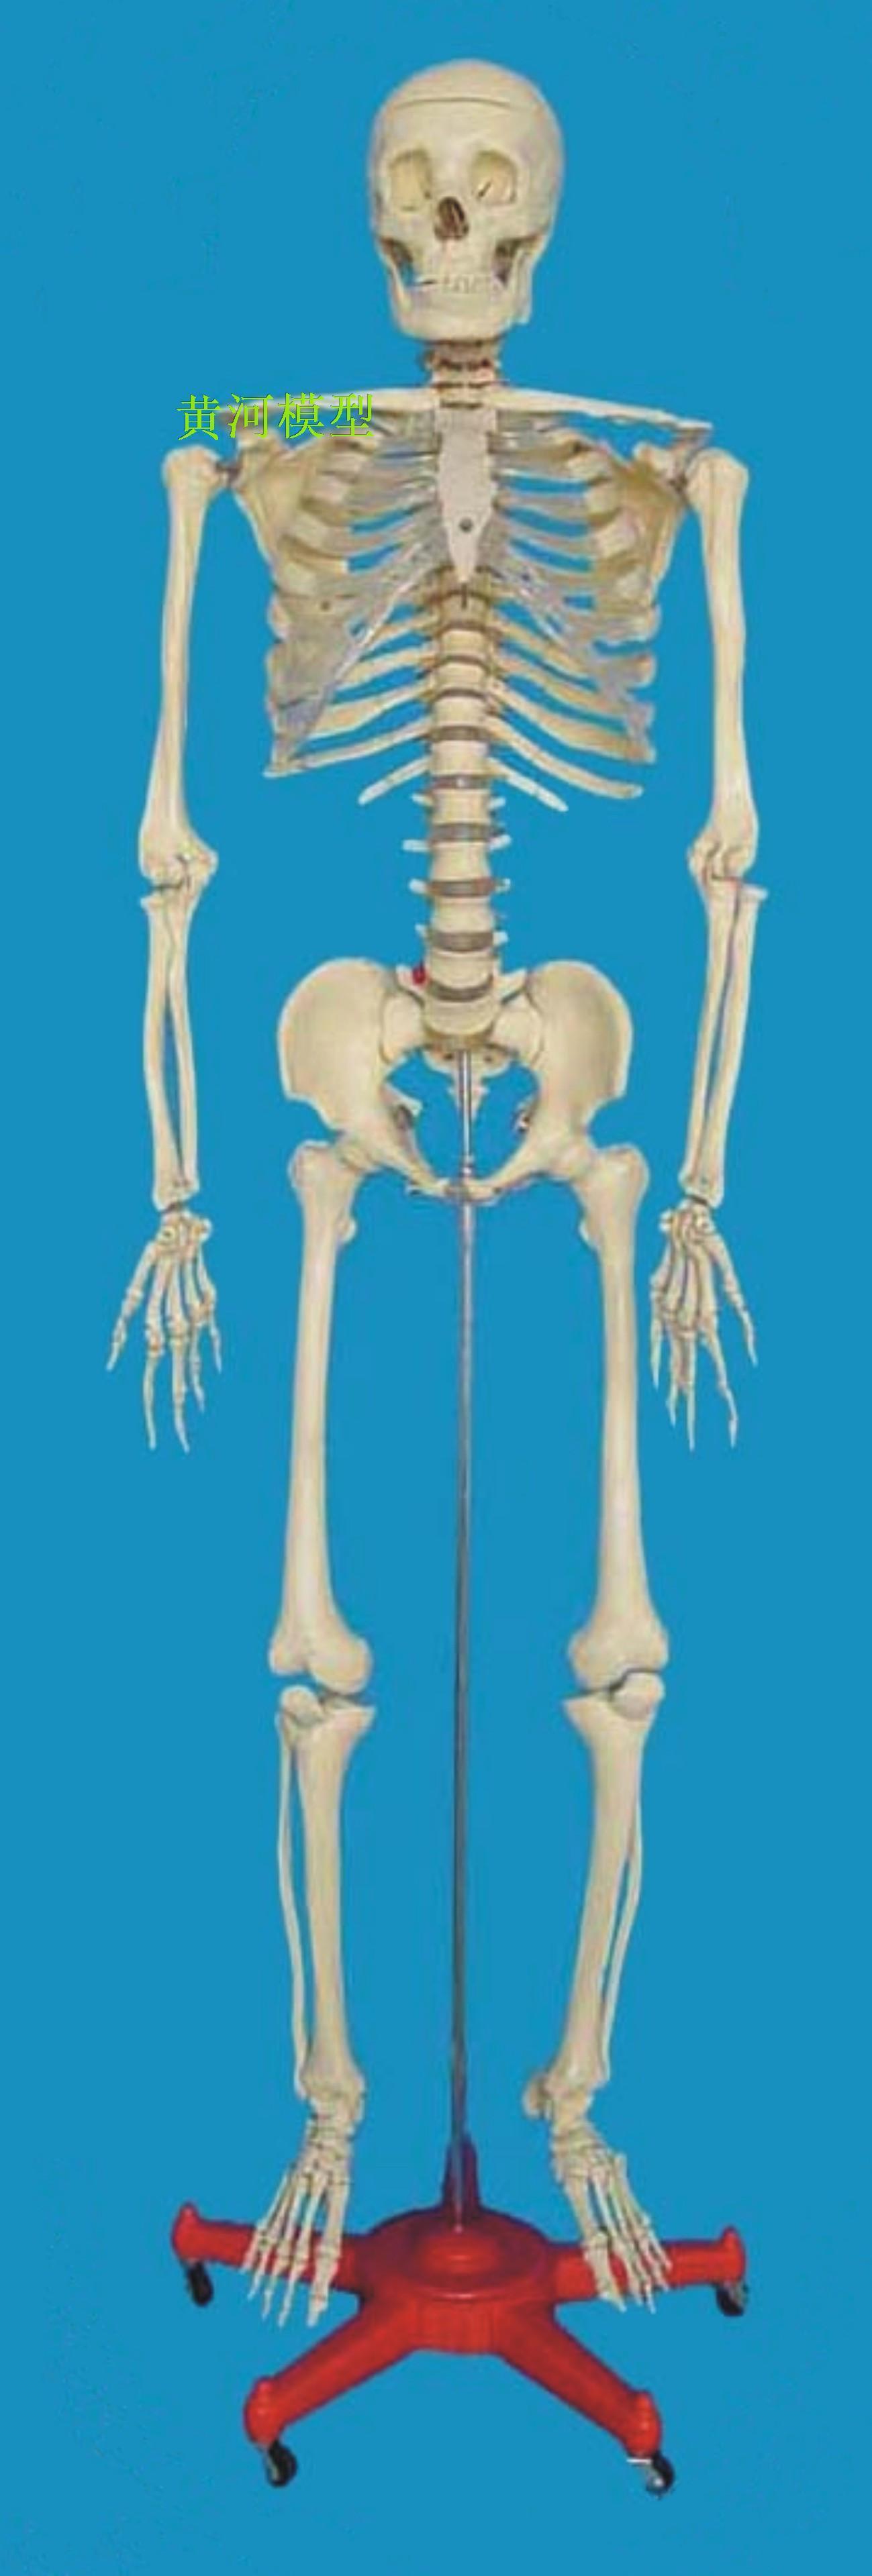 170cm人体骨骼模型,人体解剖模型,人体透明胸骨骨架,人体模型